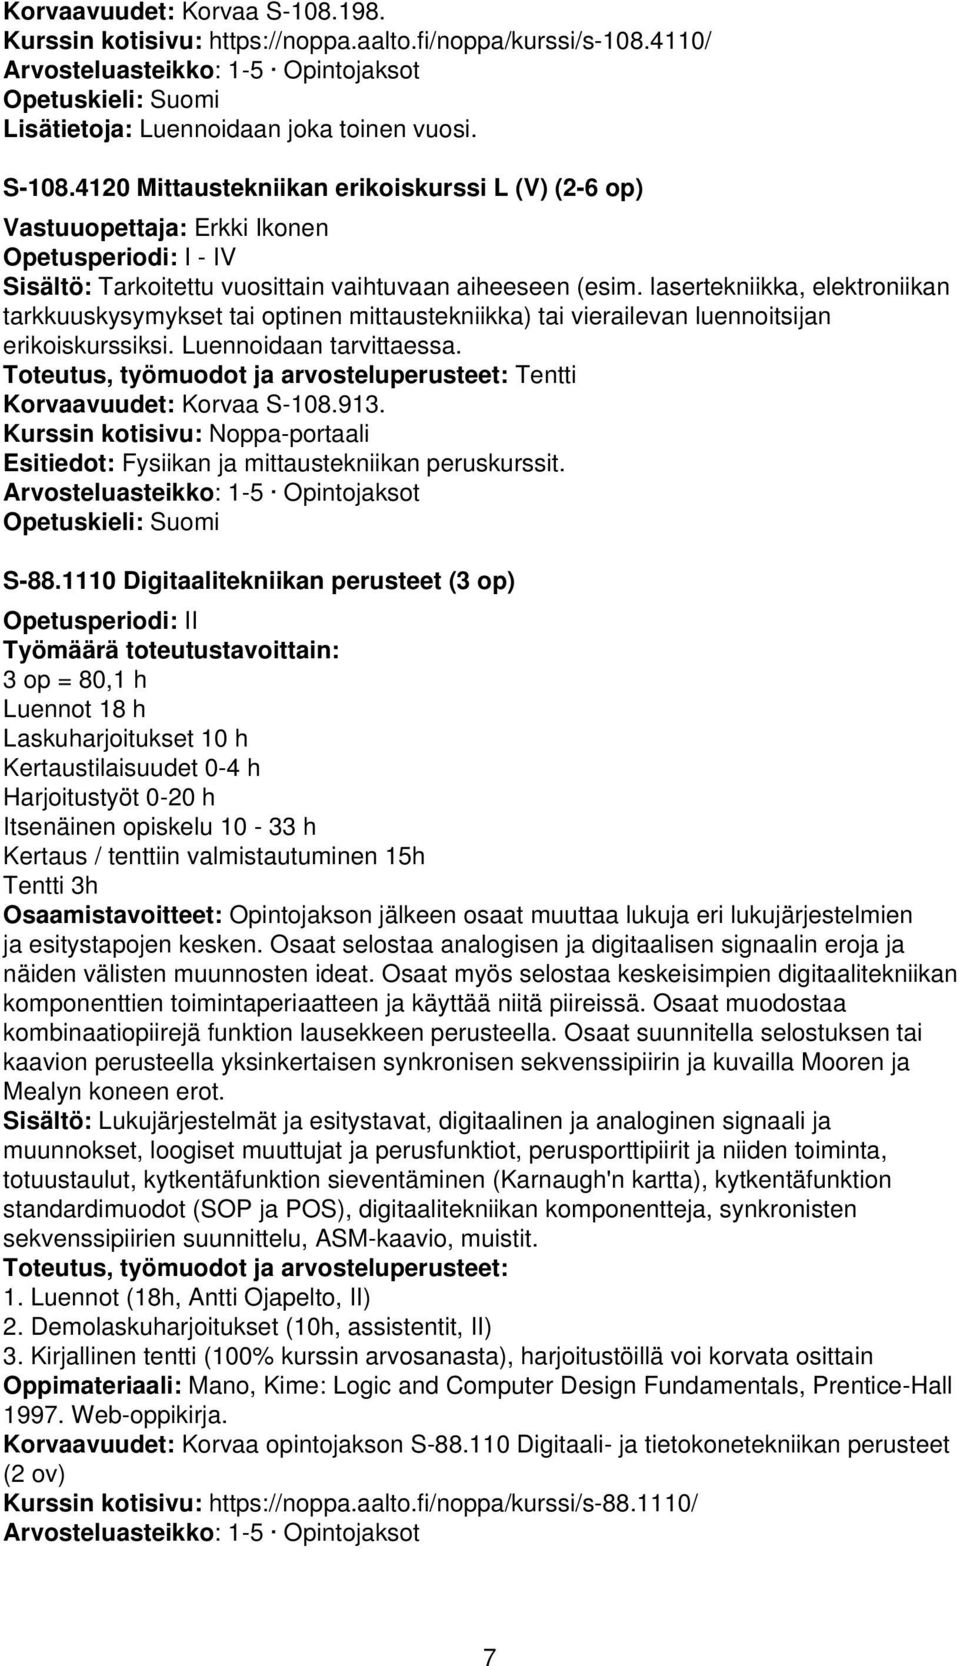 Toteutus, työmuodot ja arvosteluperusteet: Tentti Korvaavuudet: Korvaa S-108.913. Kurssin kotisivu: Noppa-portaali Esitiedot: Fysiikan ja mittaustekniikan peruskurssit. S-88.